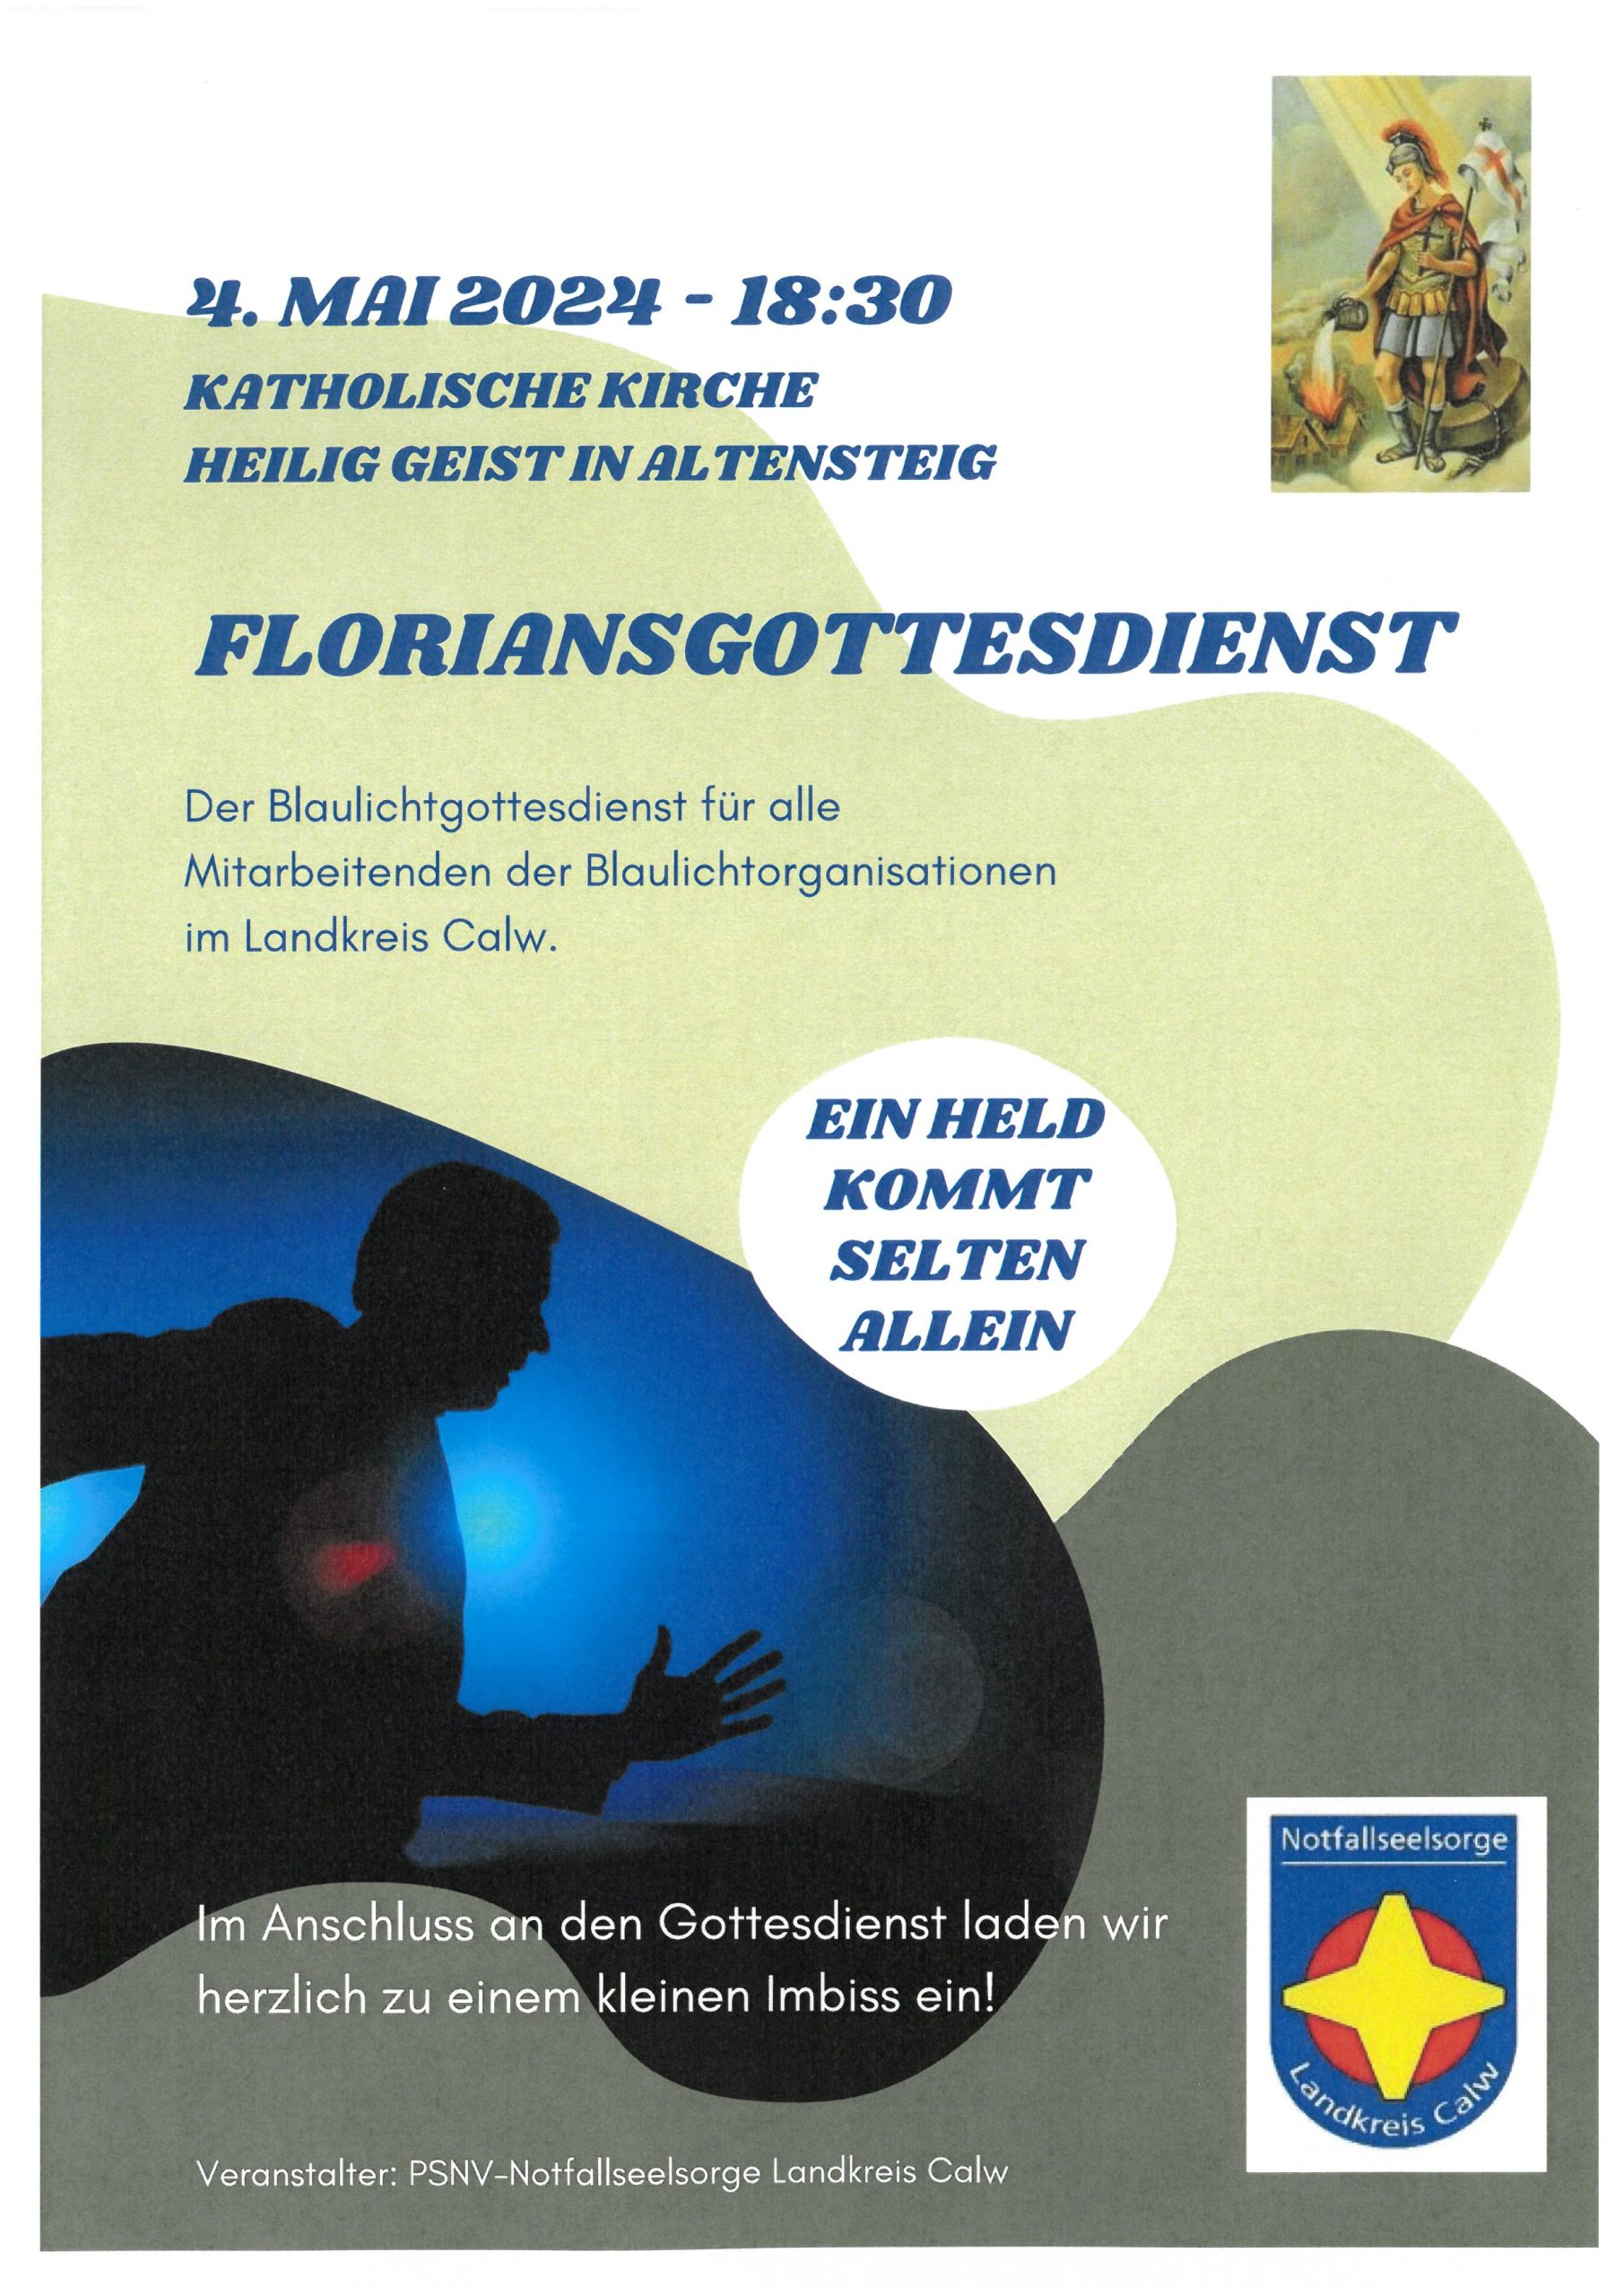 Floriansgottesdienst am 04. Mai 2024 um 18:30 Uhr in Altensteig